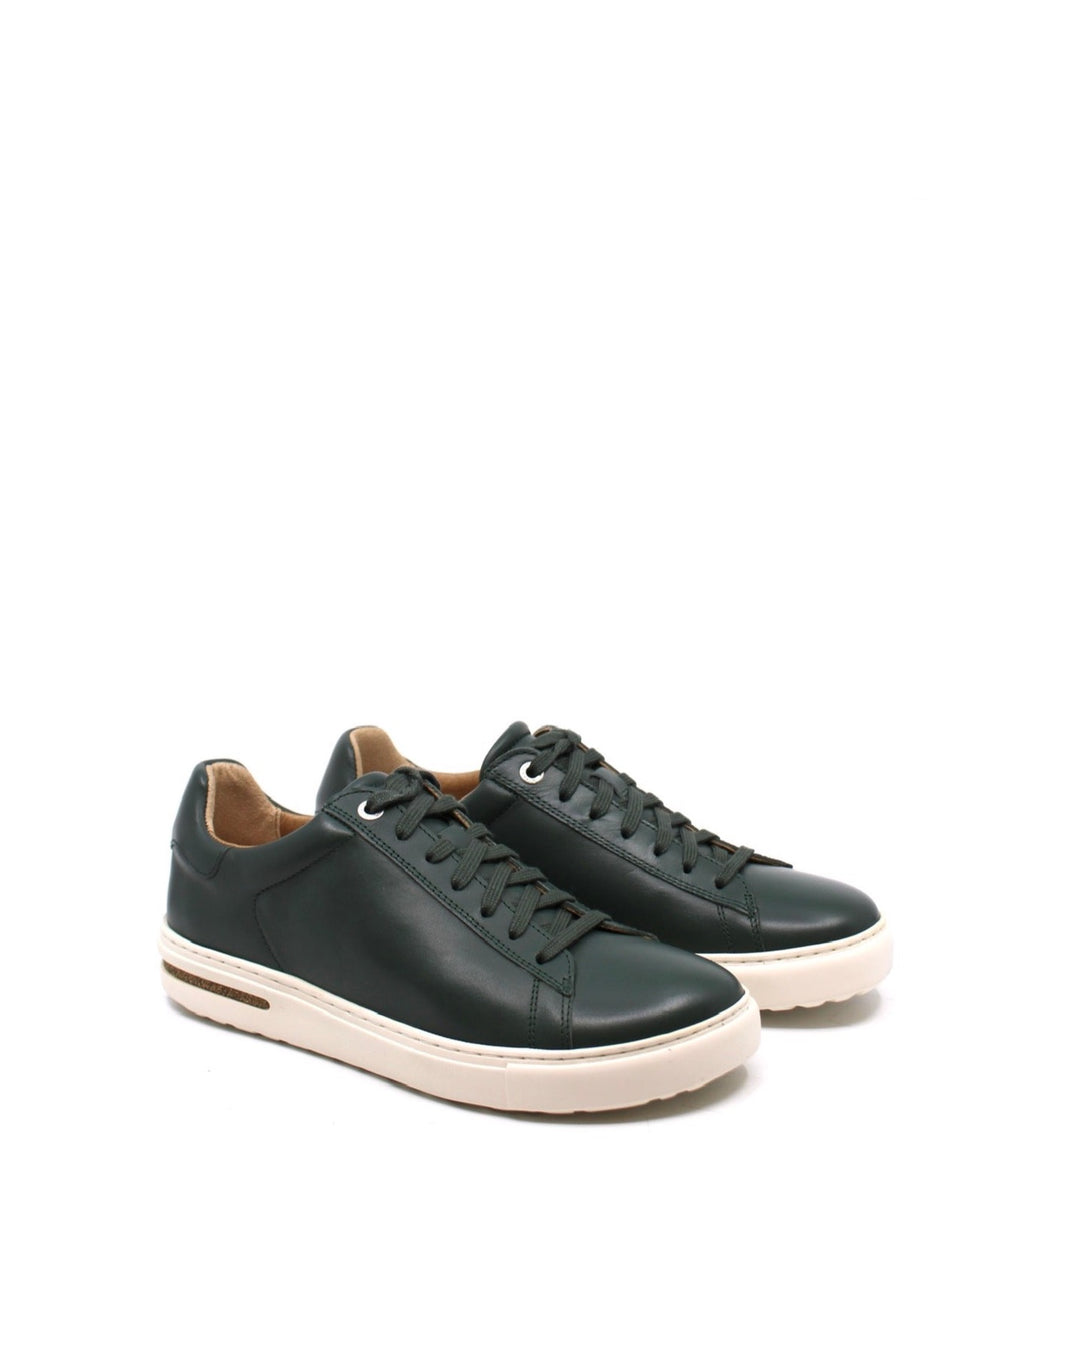 Birkenstock Bend Low Sneaker Thyme Leather - Dear Lucy